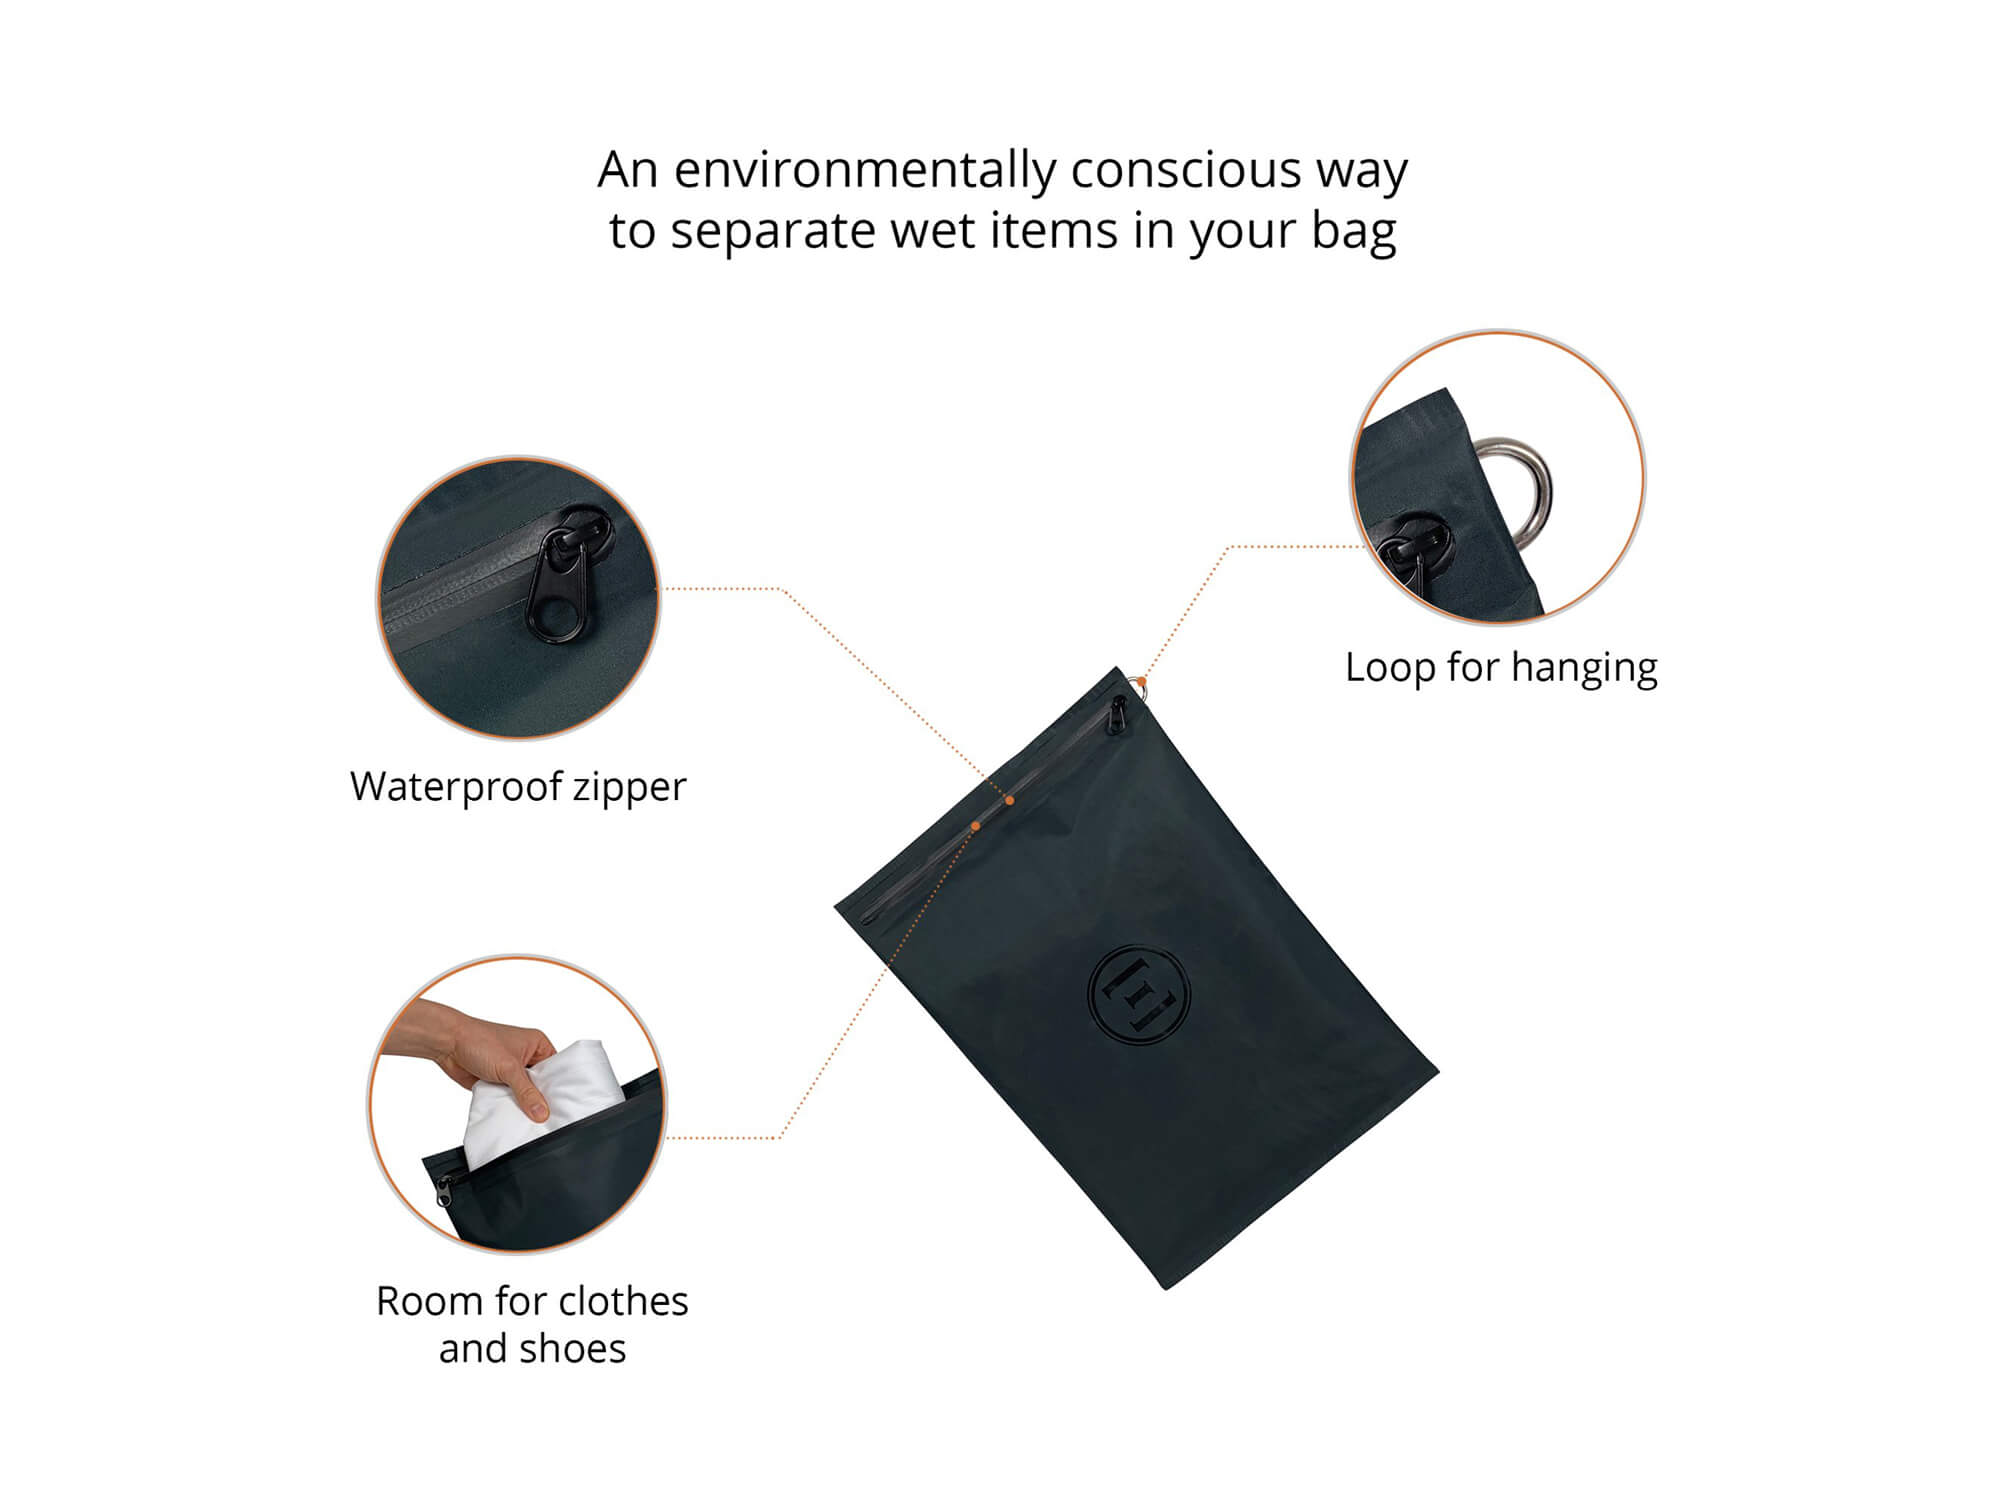 Epirus Waterproof Wet Bag Features Overview